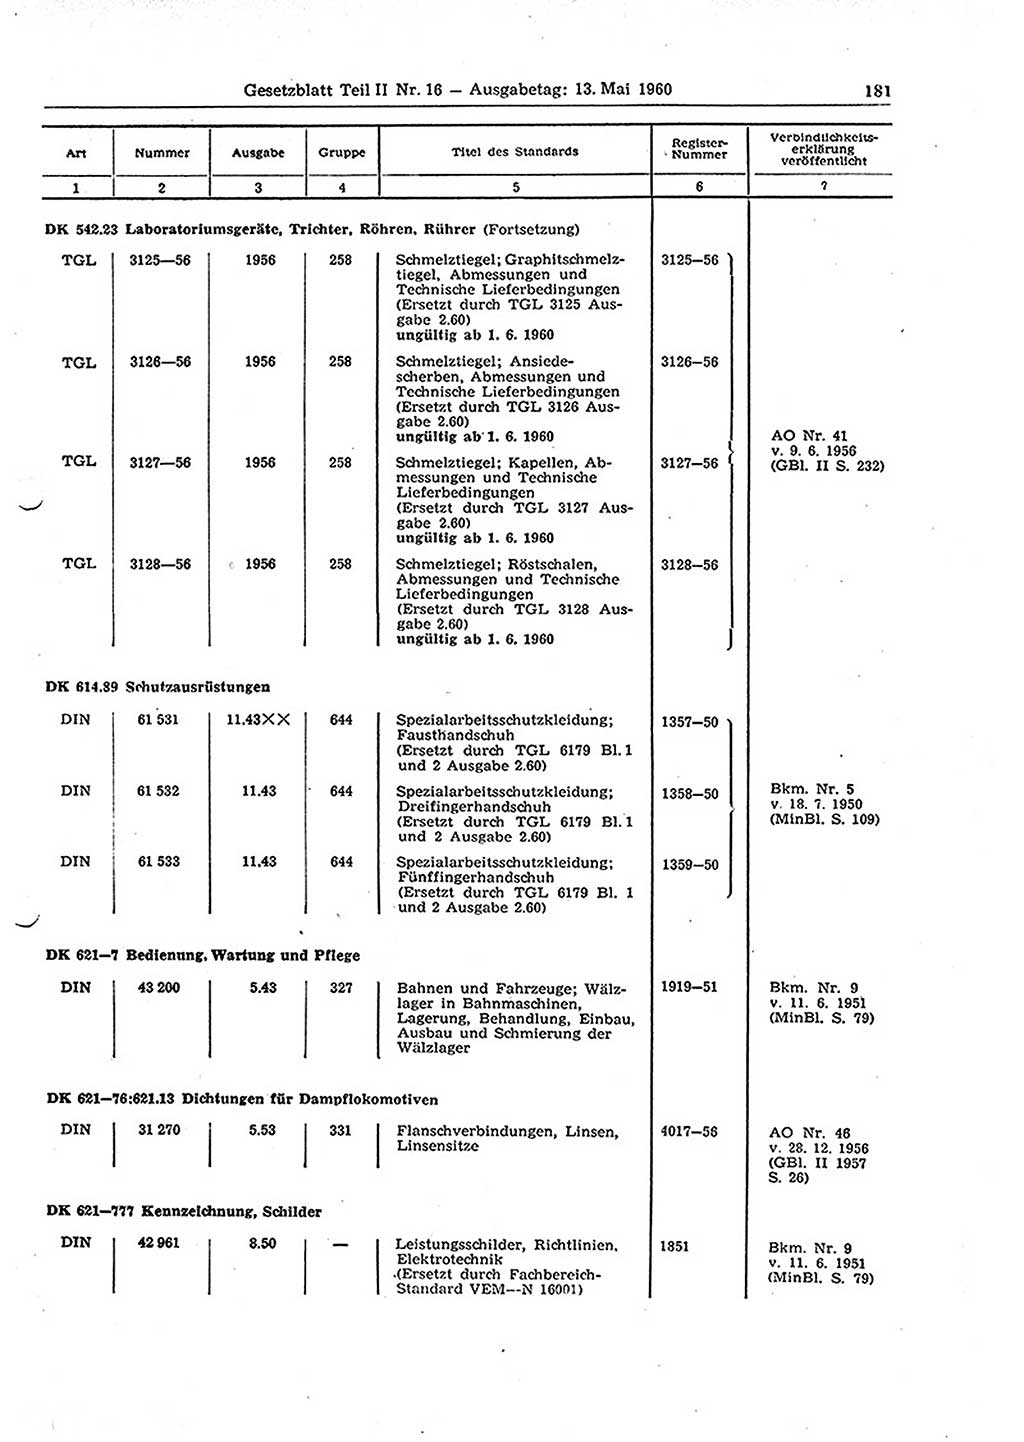 Gesetzblatt (GBl.) der Deutschen Demokratischen Republik (DDR) Teil ⅠⅠ 1960, Seite 181 (GBl. DDR ⅠⅠ 1960, S. 181)